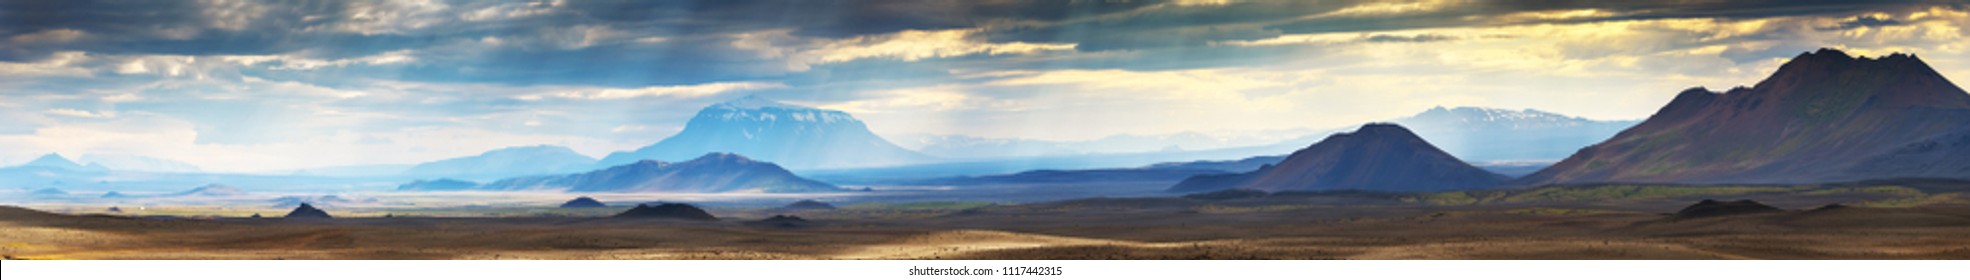 Панорама Красивый пейзаж горы Modrudalur с горой Herdubreid в Исландии, летнее время